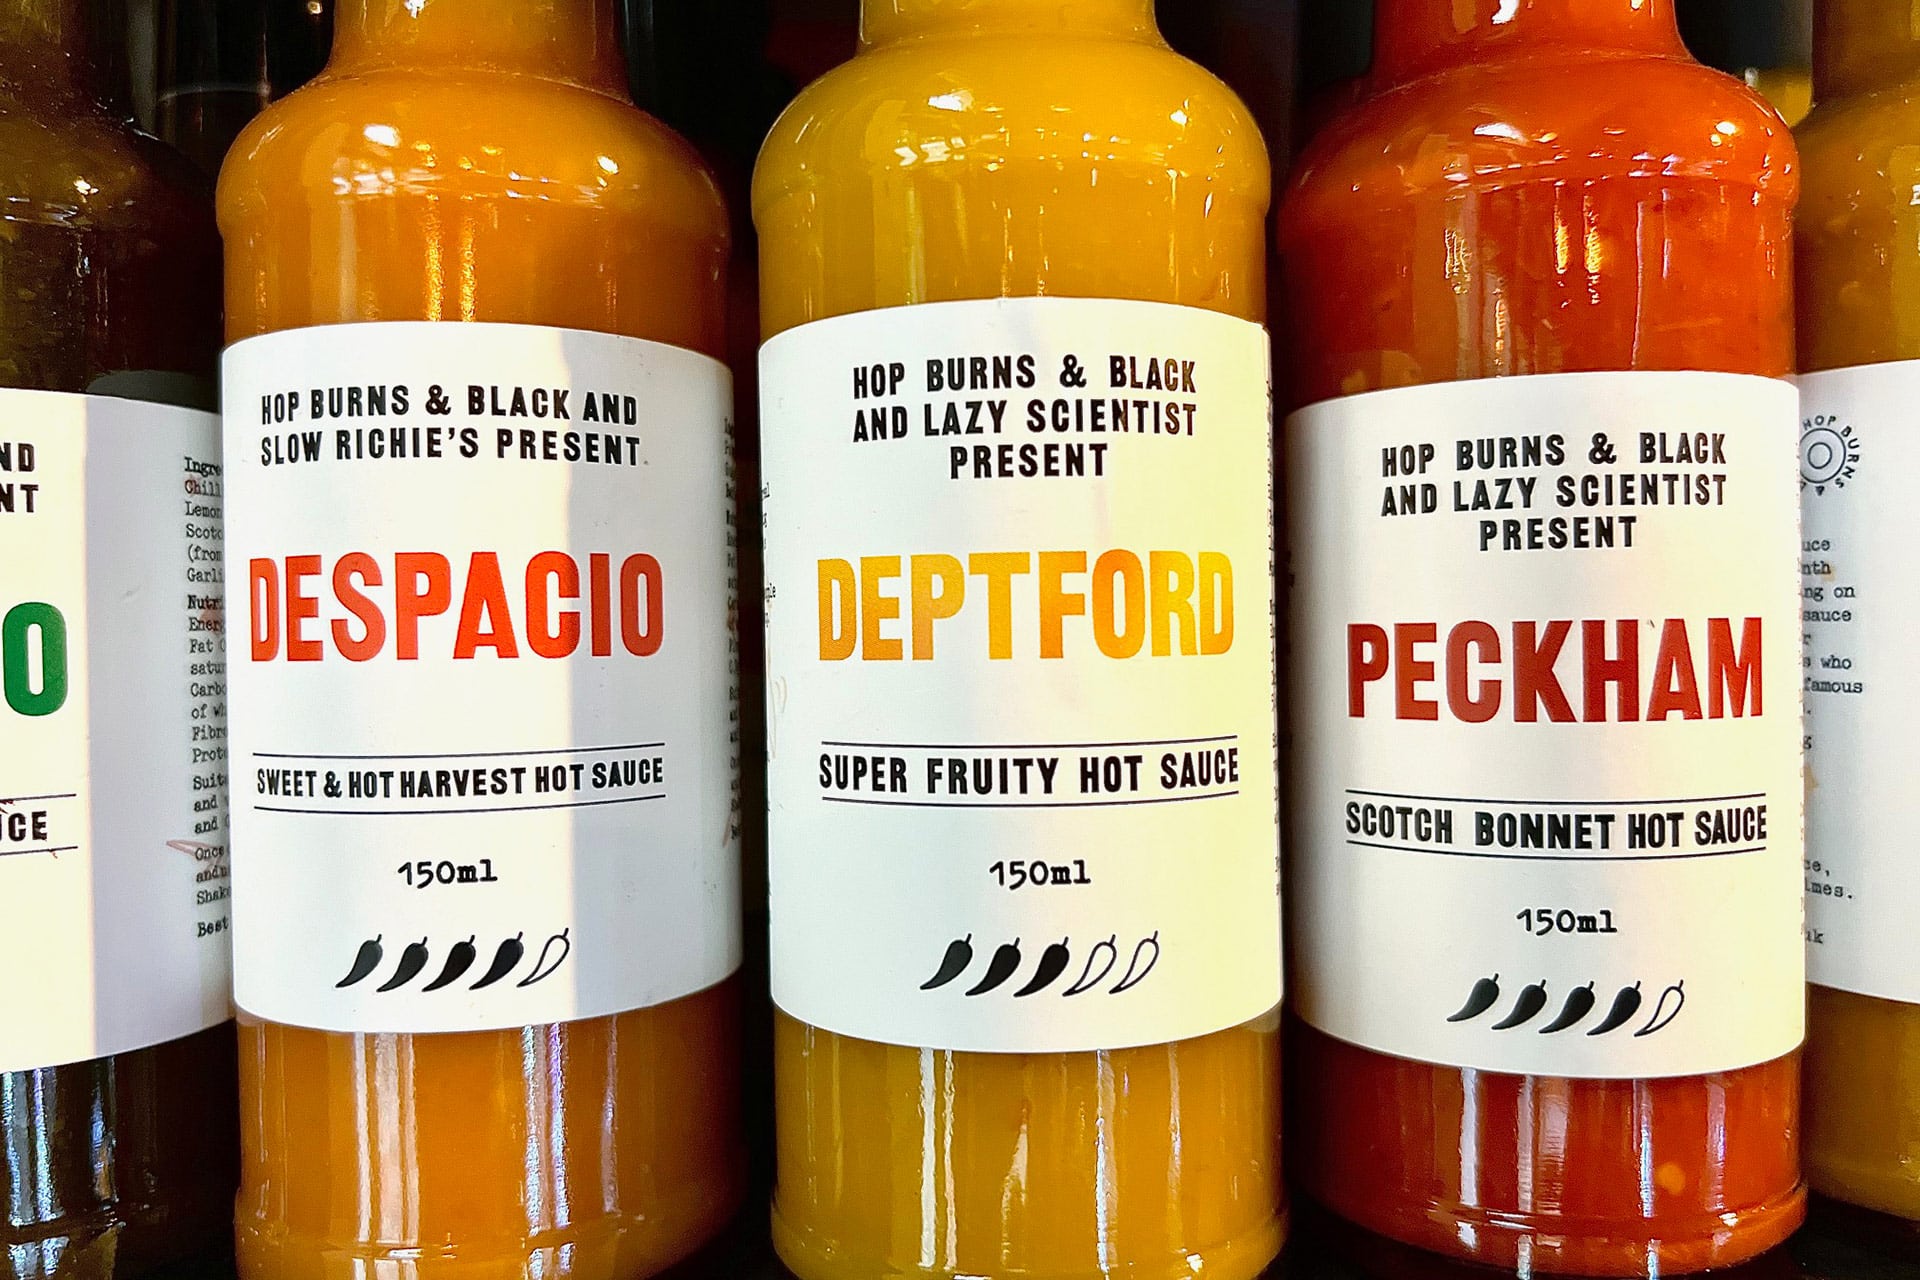 Deptford Super Fruity Hot Sauce (Medium heat)